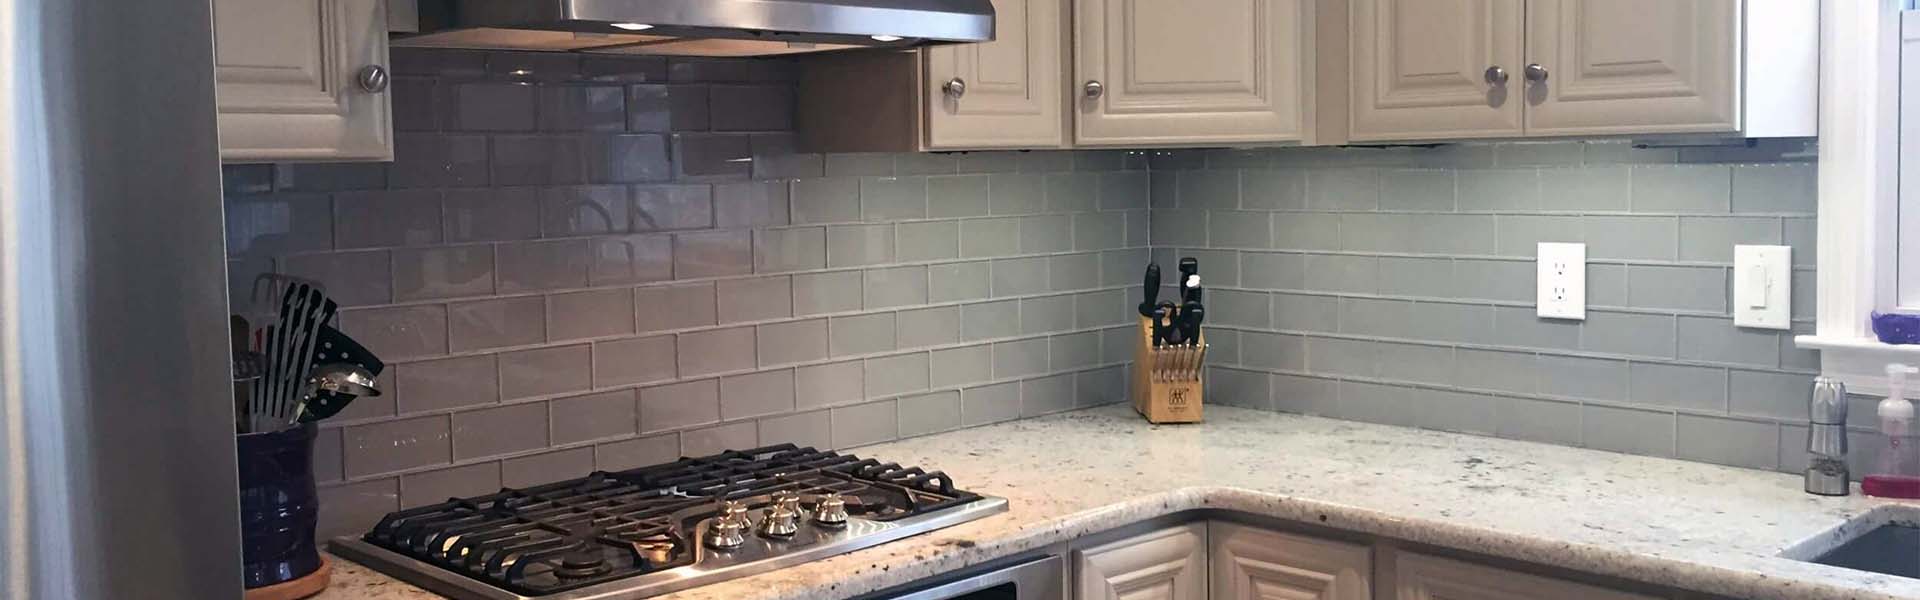 kitchen tile masonry and backsplashes